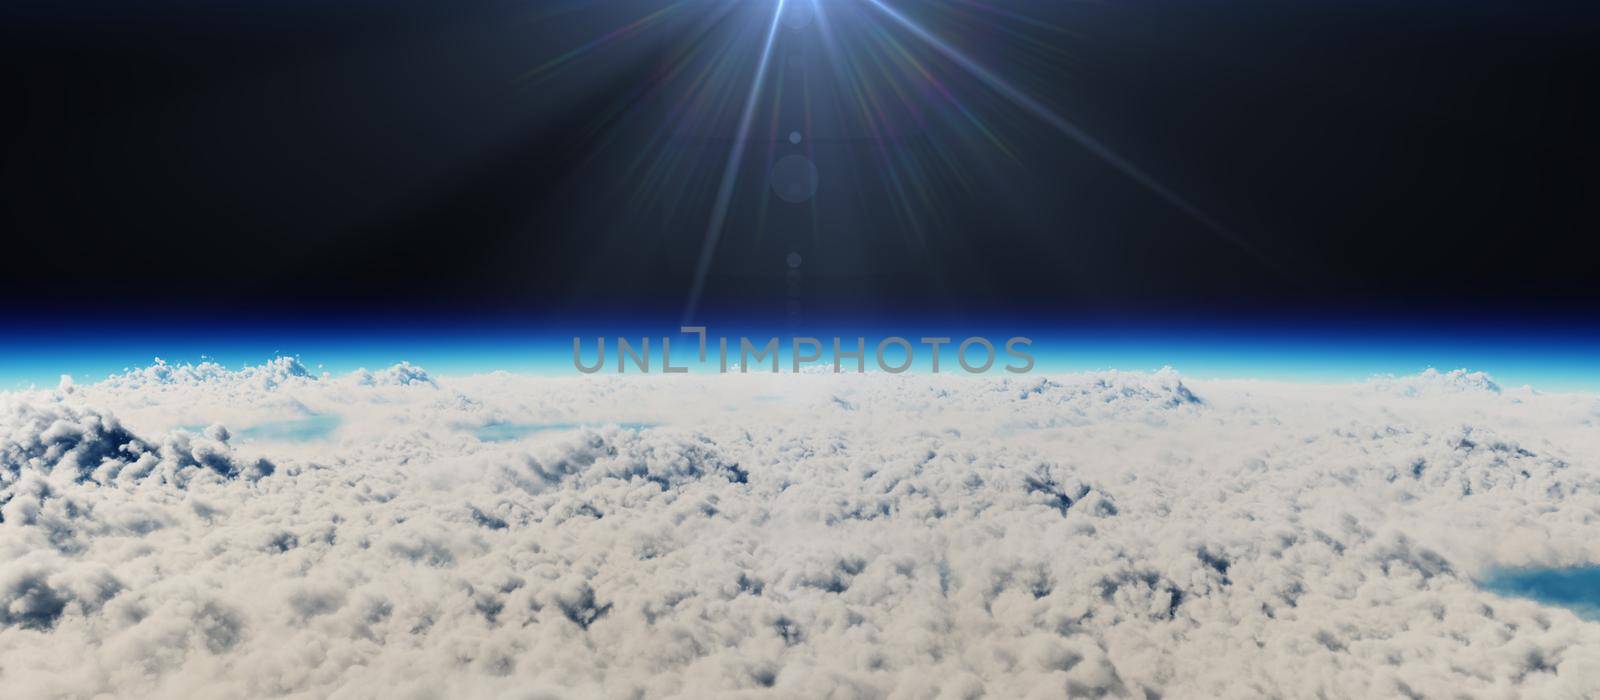 planet sunset above clouds, 3d render illustration